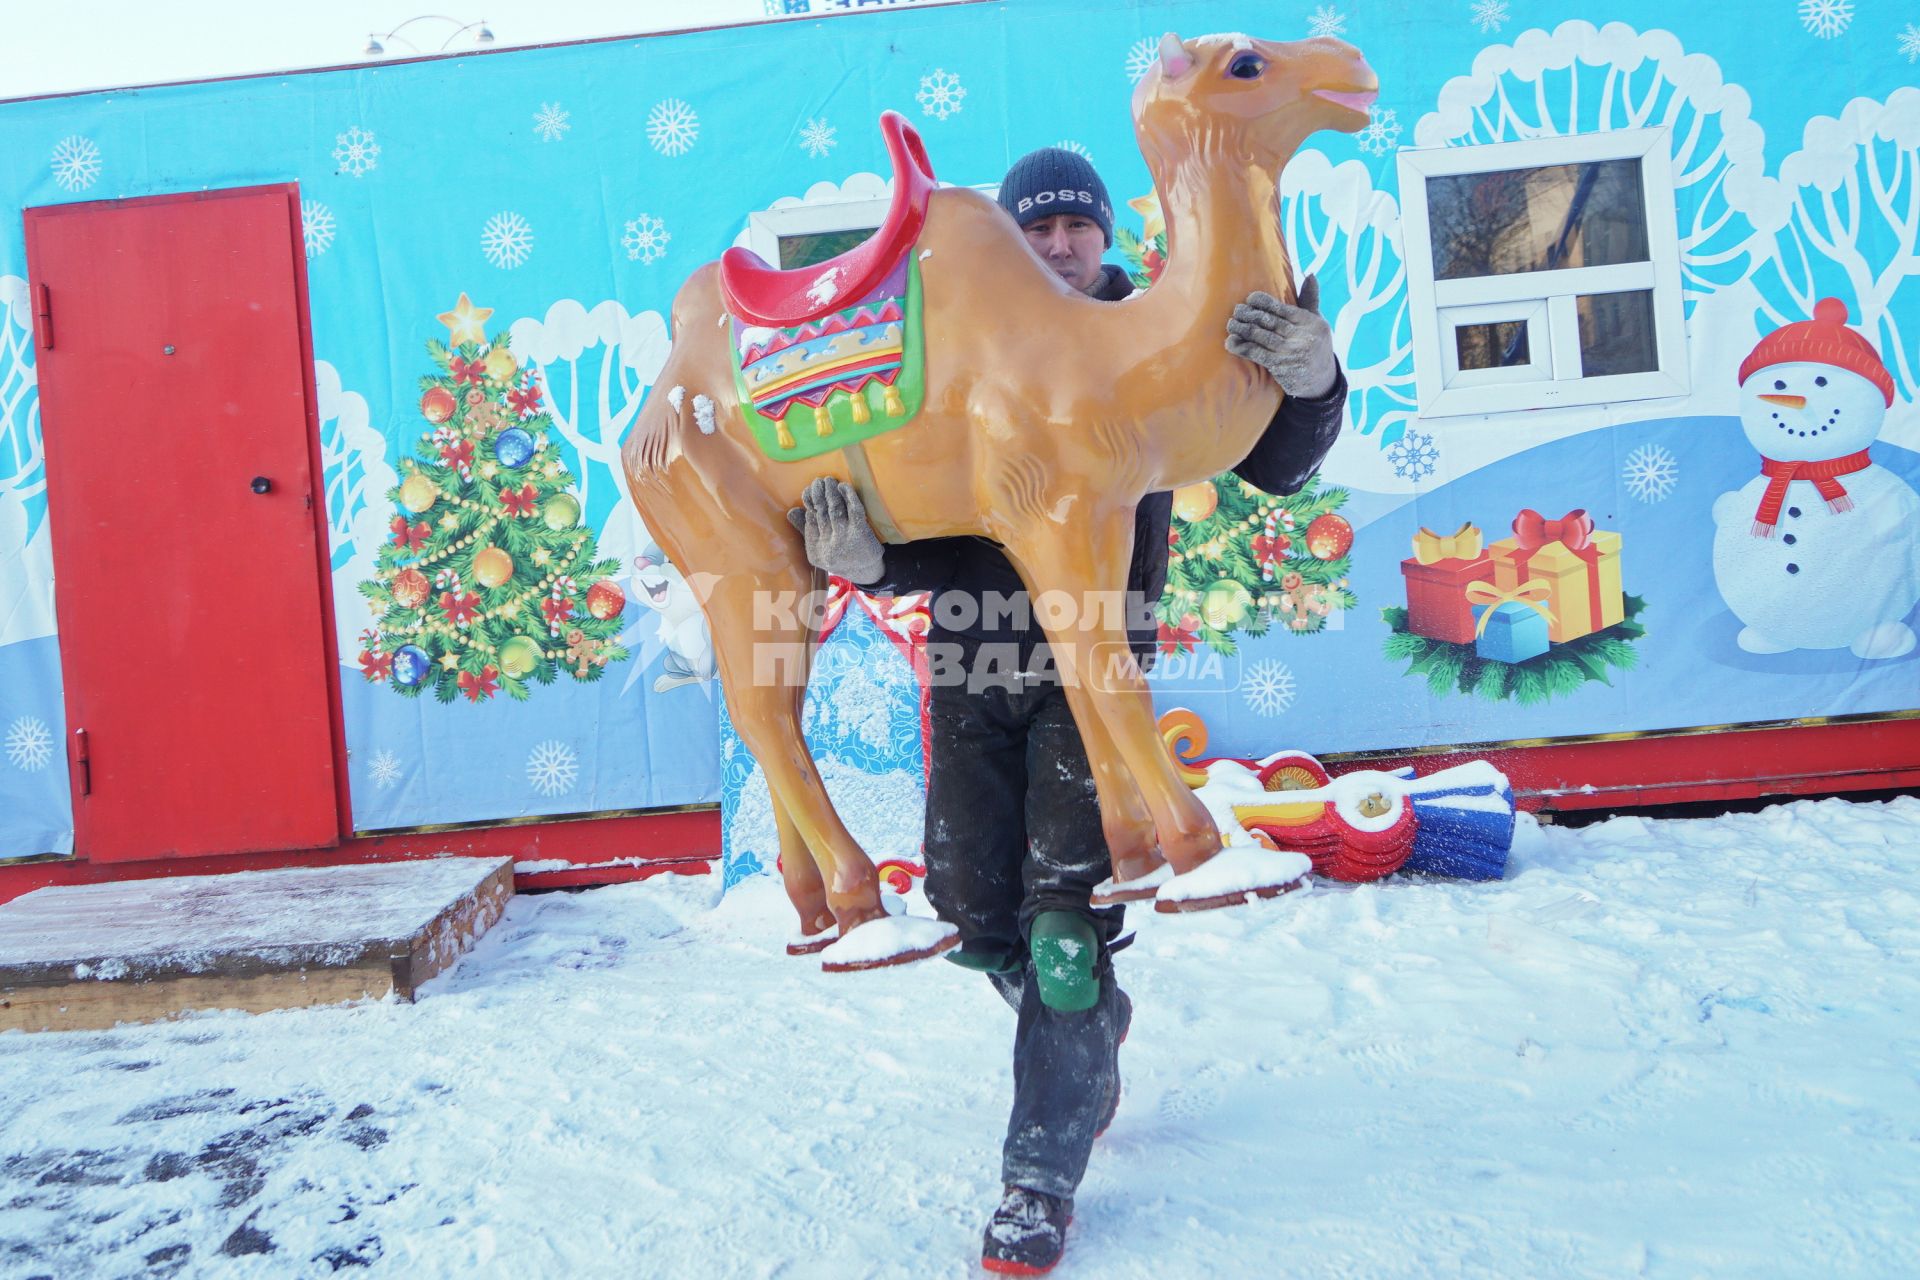 Екатеринбург. Рабочий устанавливает верблюда на карусель во время строительства ледового городка на `Площади 1905 года`.